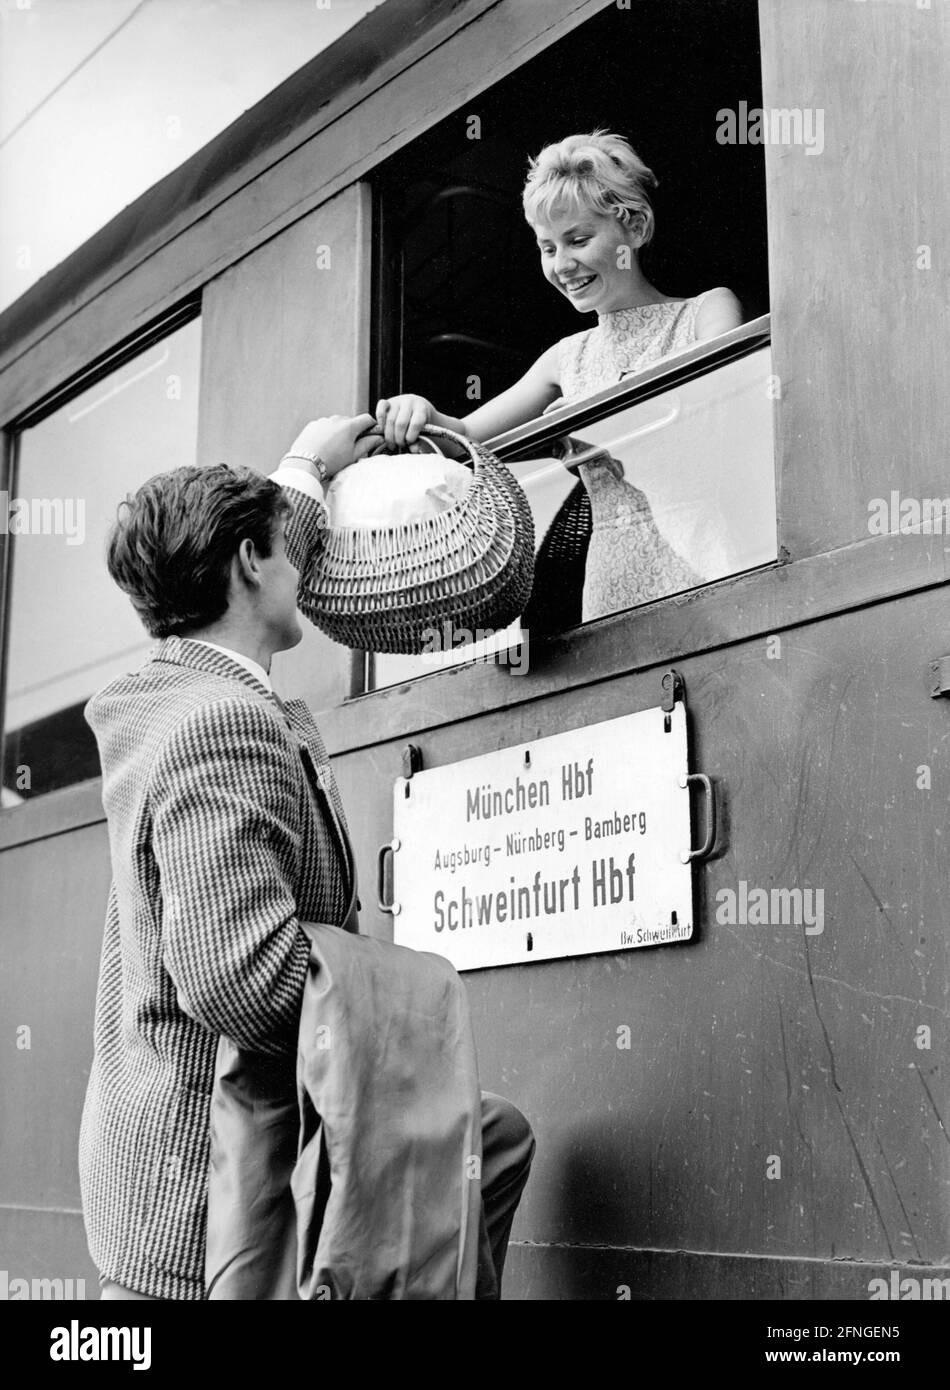 Frau erhält einen gefüllten Korb, der ihr von einem übergeben wird Mann durch das Zugfenster [automatisierte Übersetzung] Stockfoto